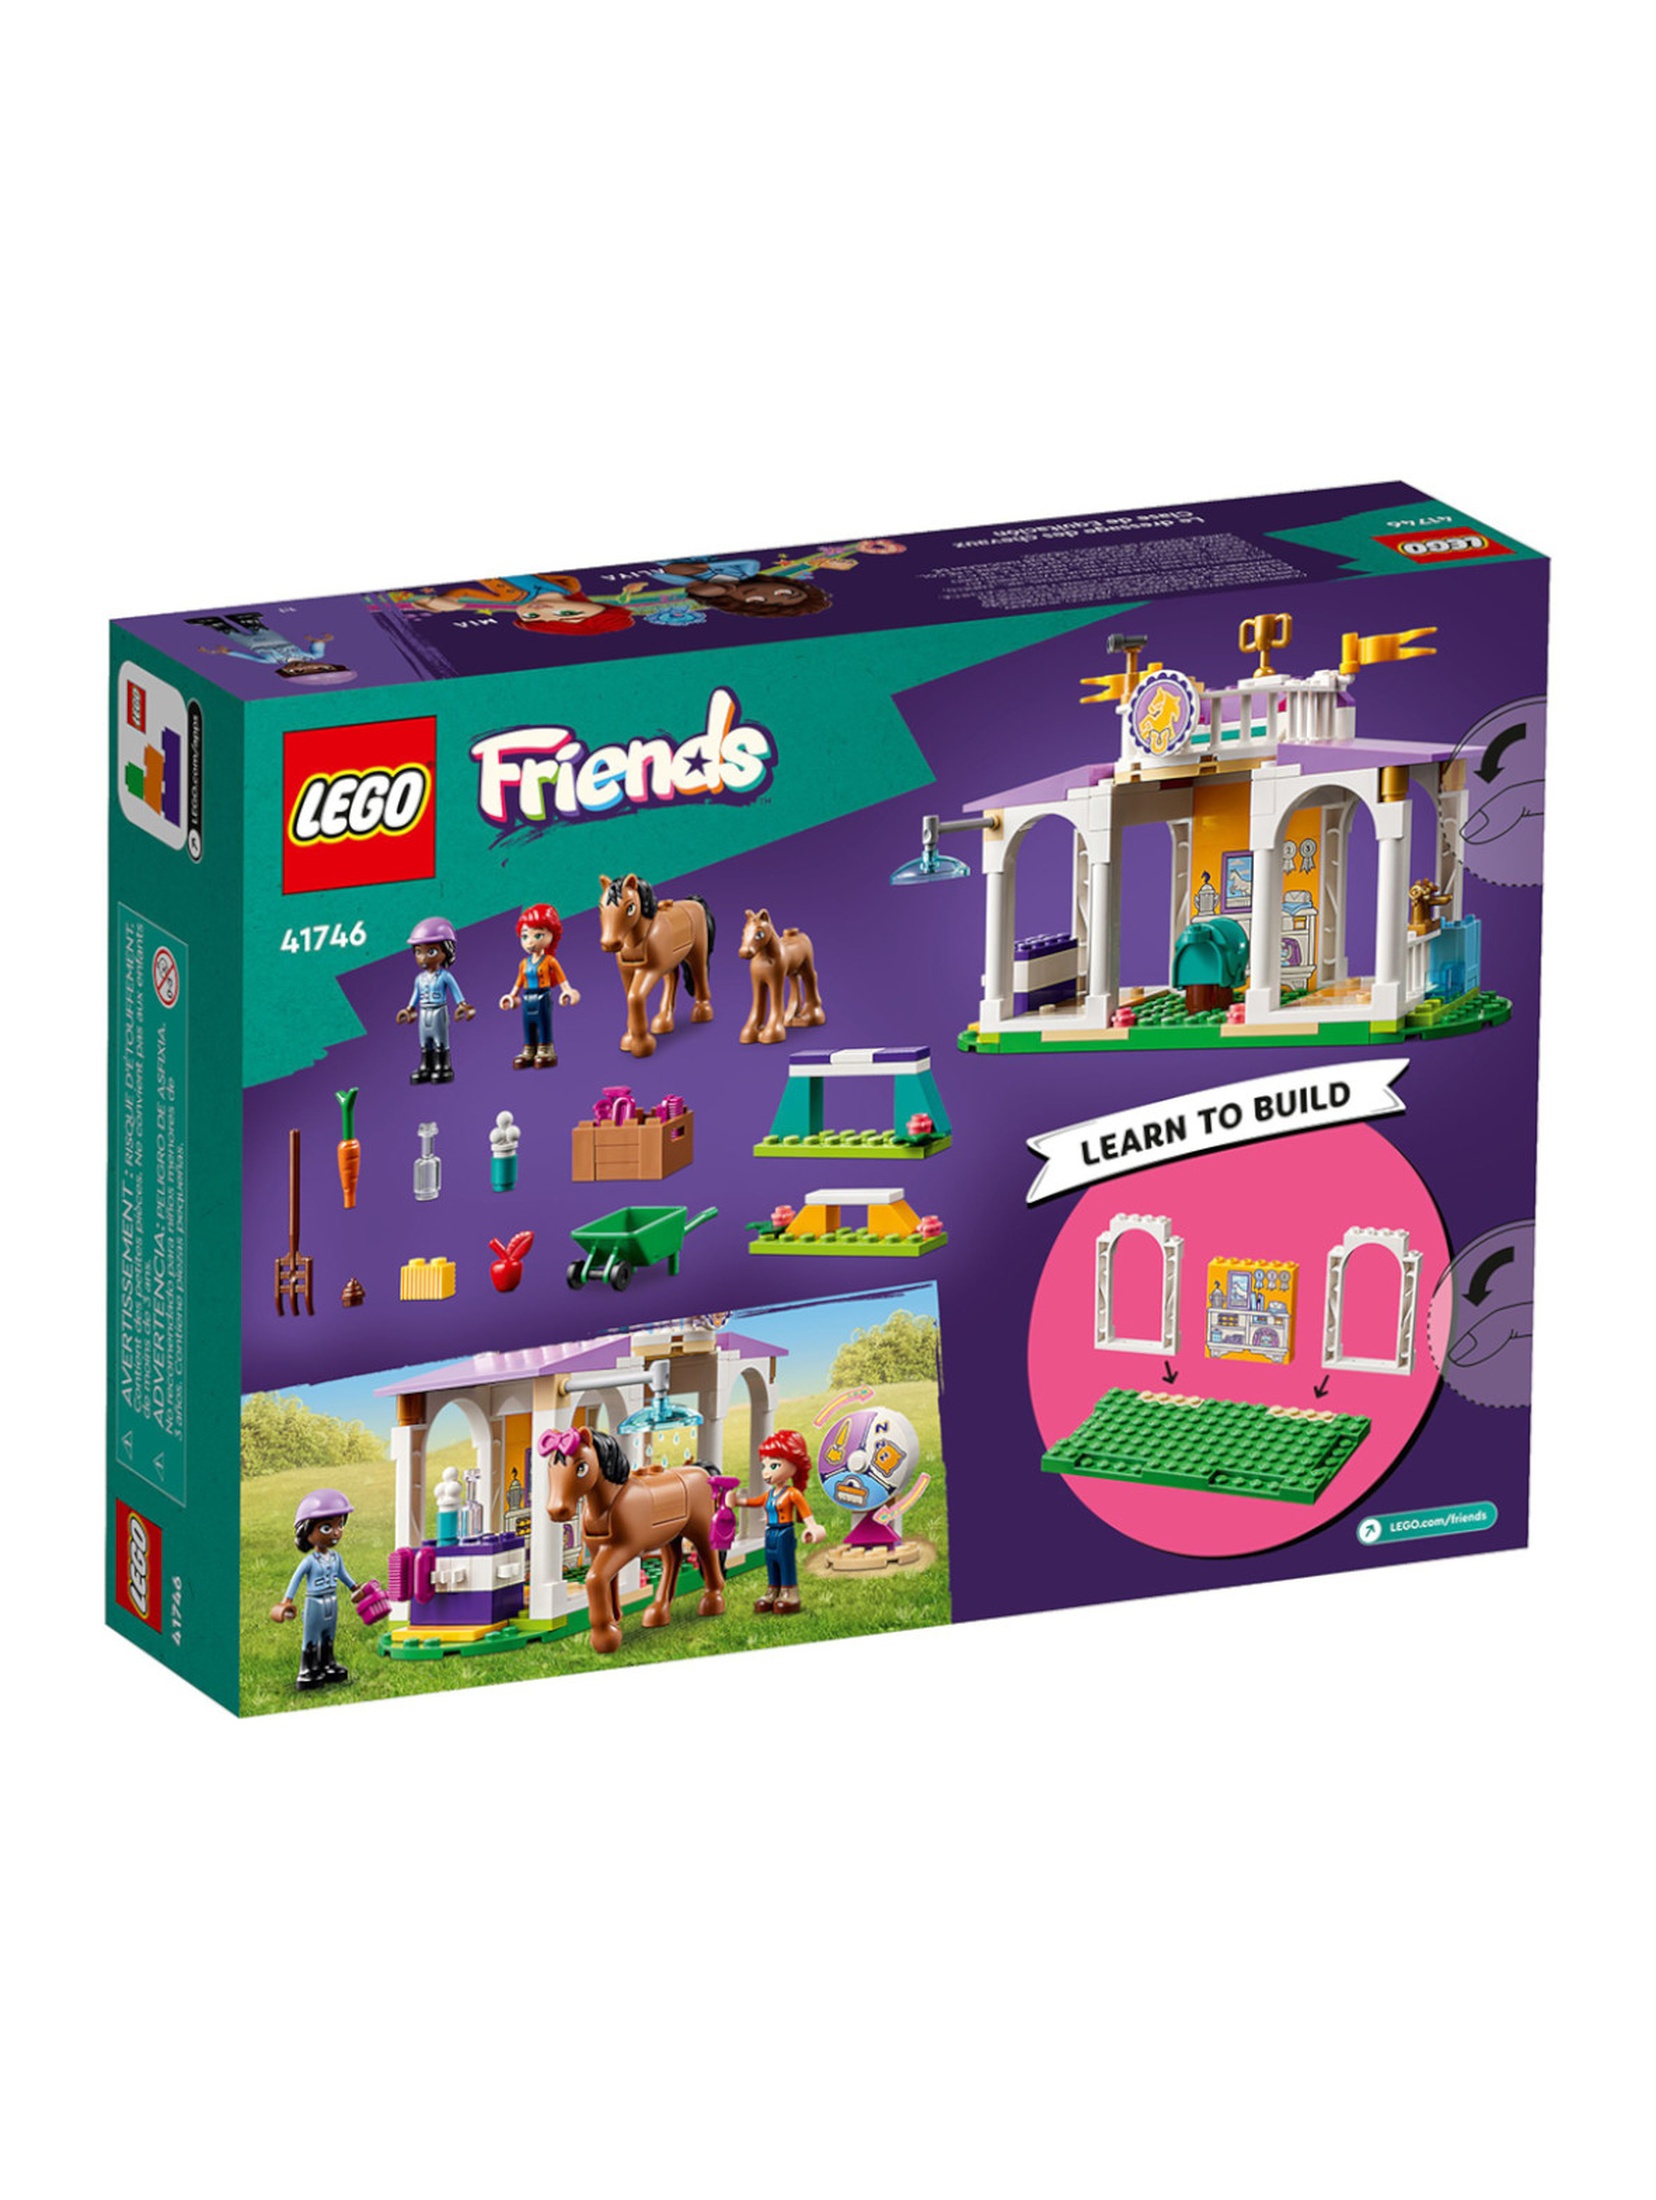 Klocki LEGO Friends 41746 Szkolenie koni - 134 elementy, wiek 4 +